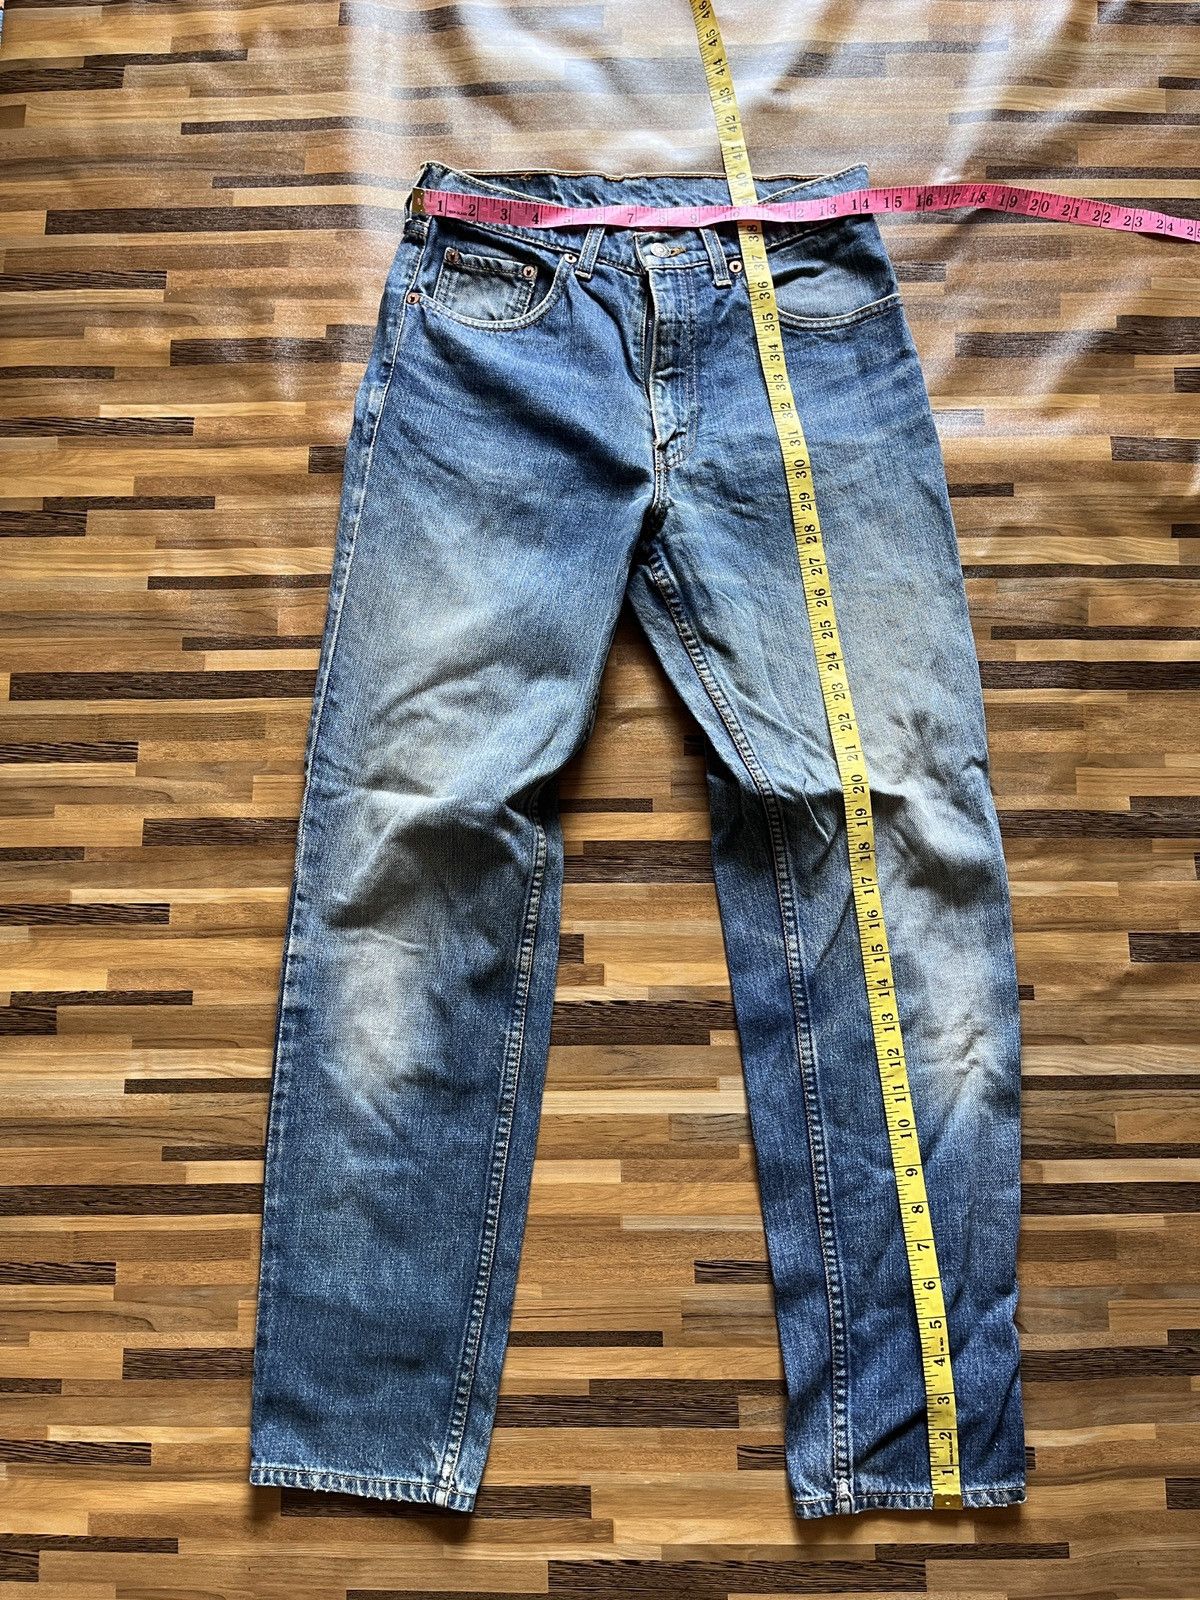 Vintage 1980s Levi's 603 Denim Jeans Straight Cut - 3